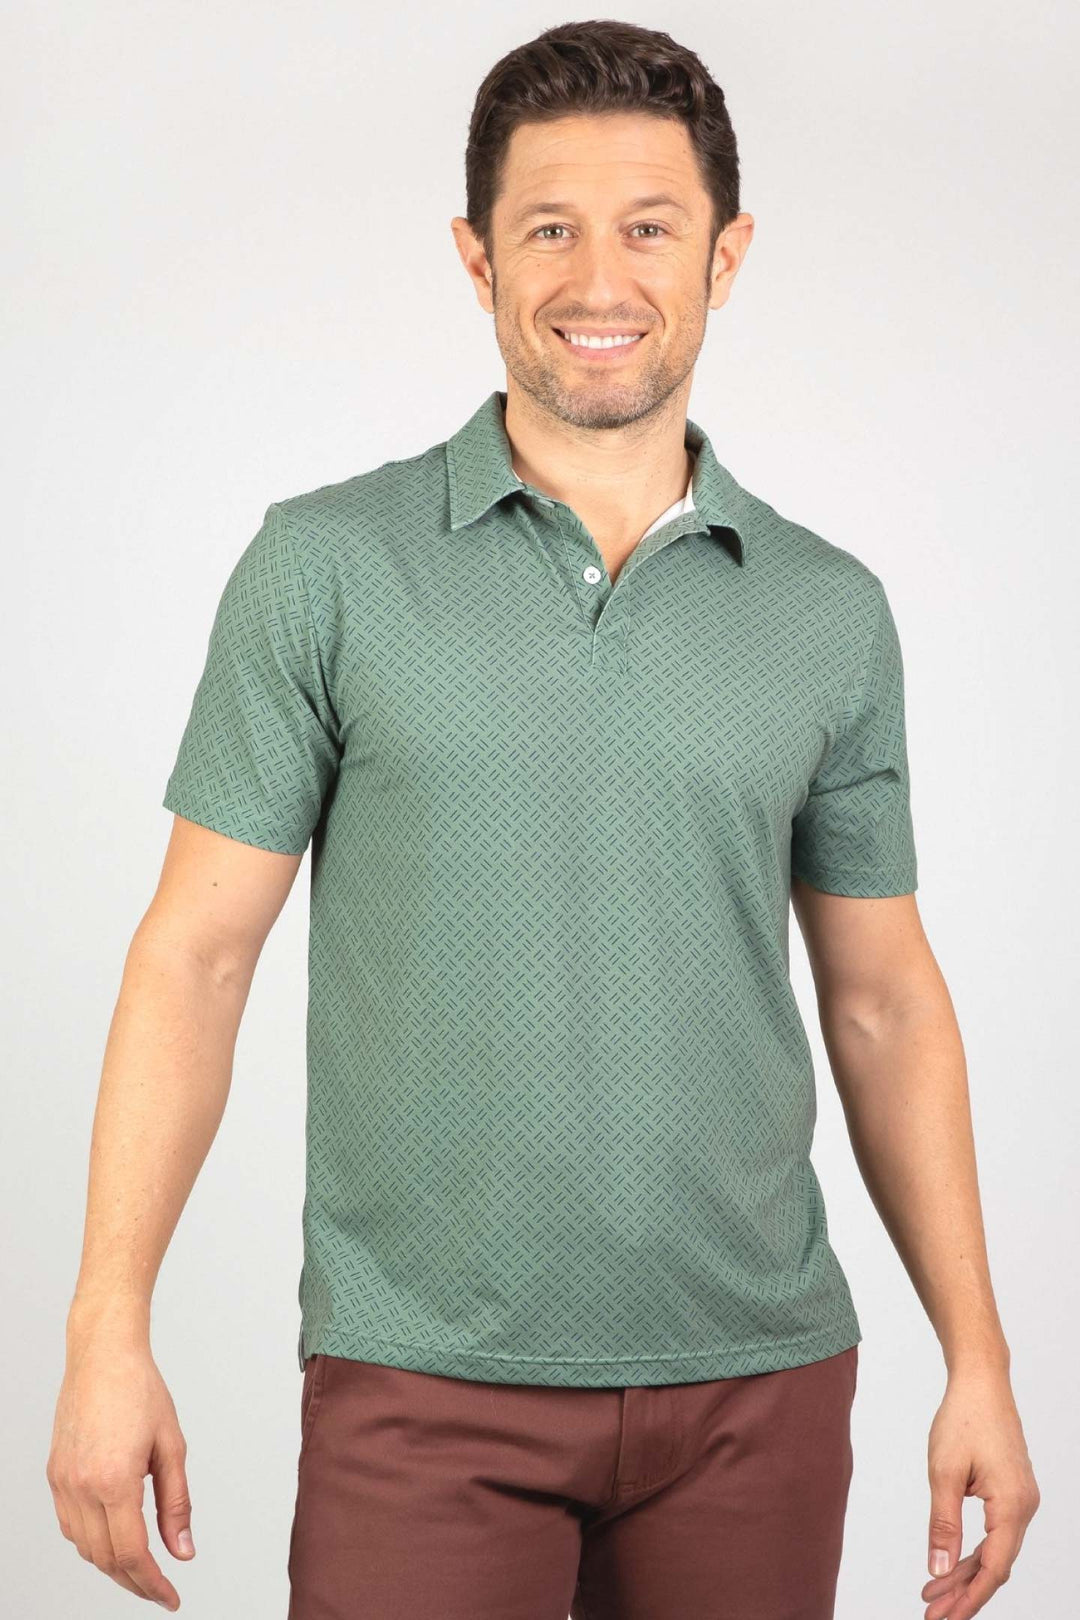 Buy Green Strikes Tech Polo Shirt for Short Men | Ash & Erie   Tech Polo Shirt